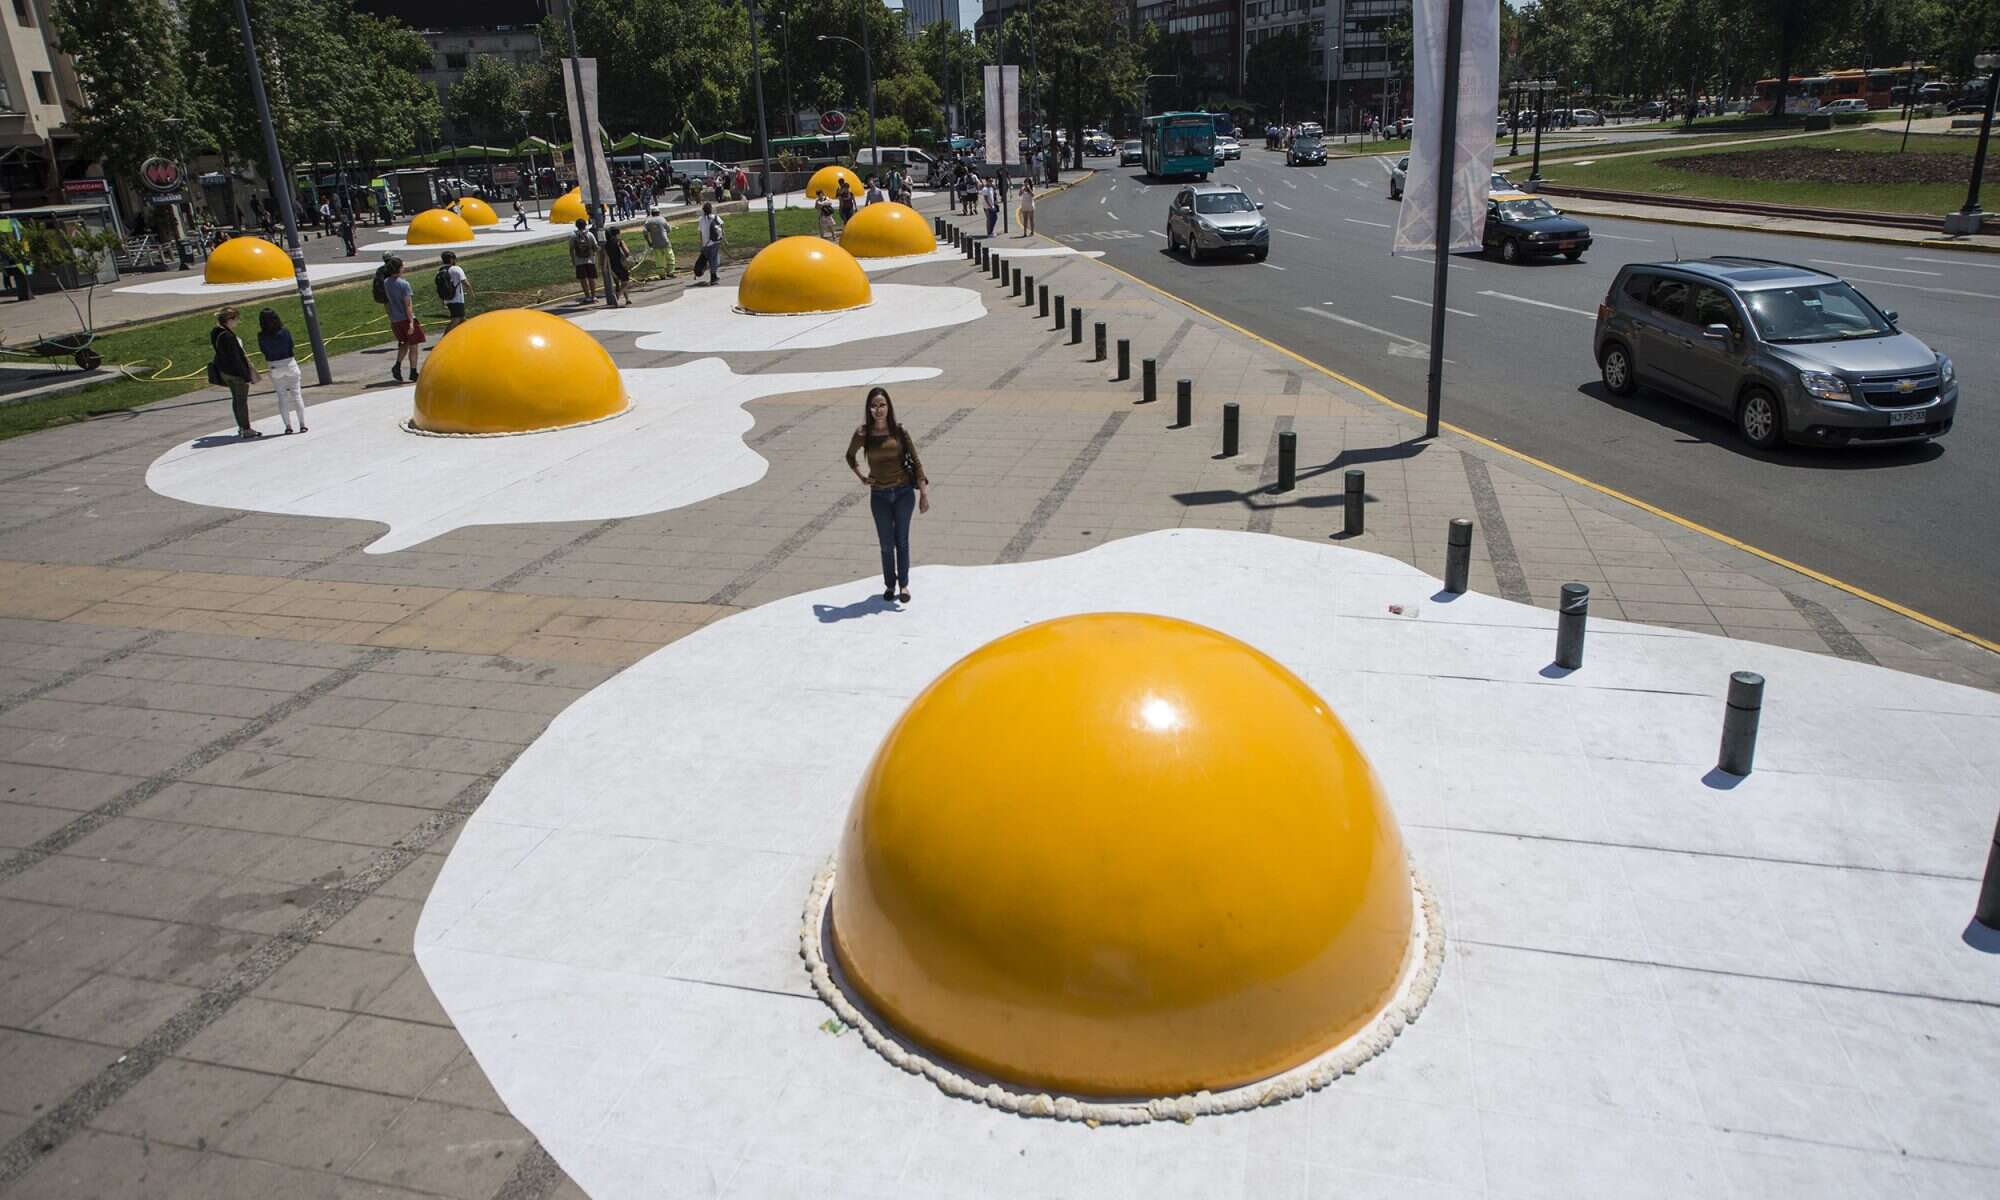 Giant Egg On Base - Giant Sculptures In Australia